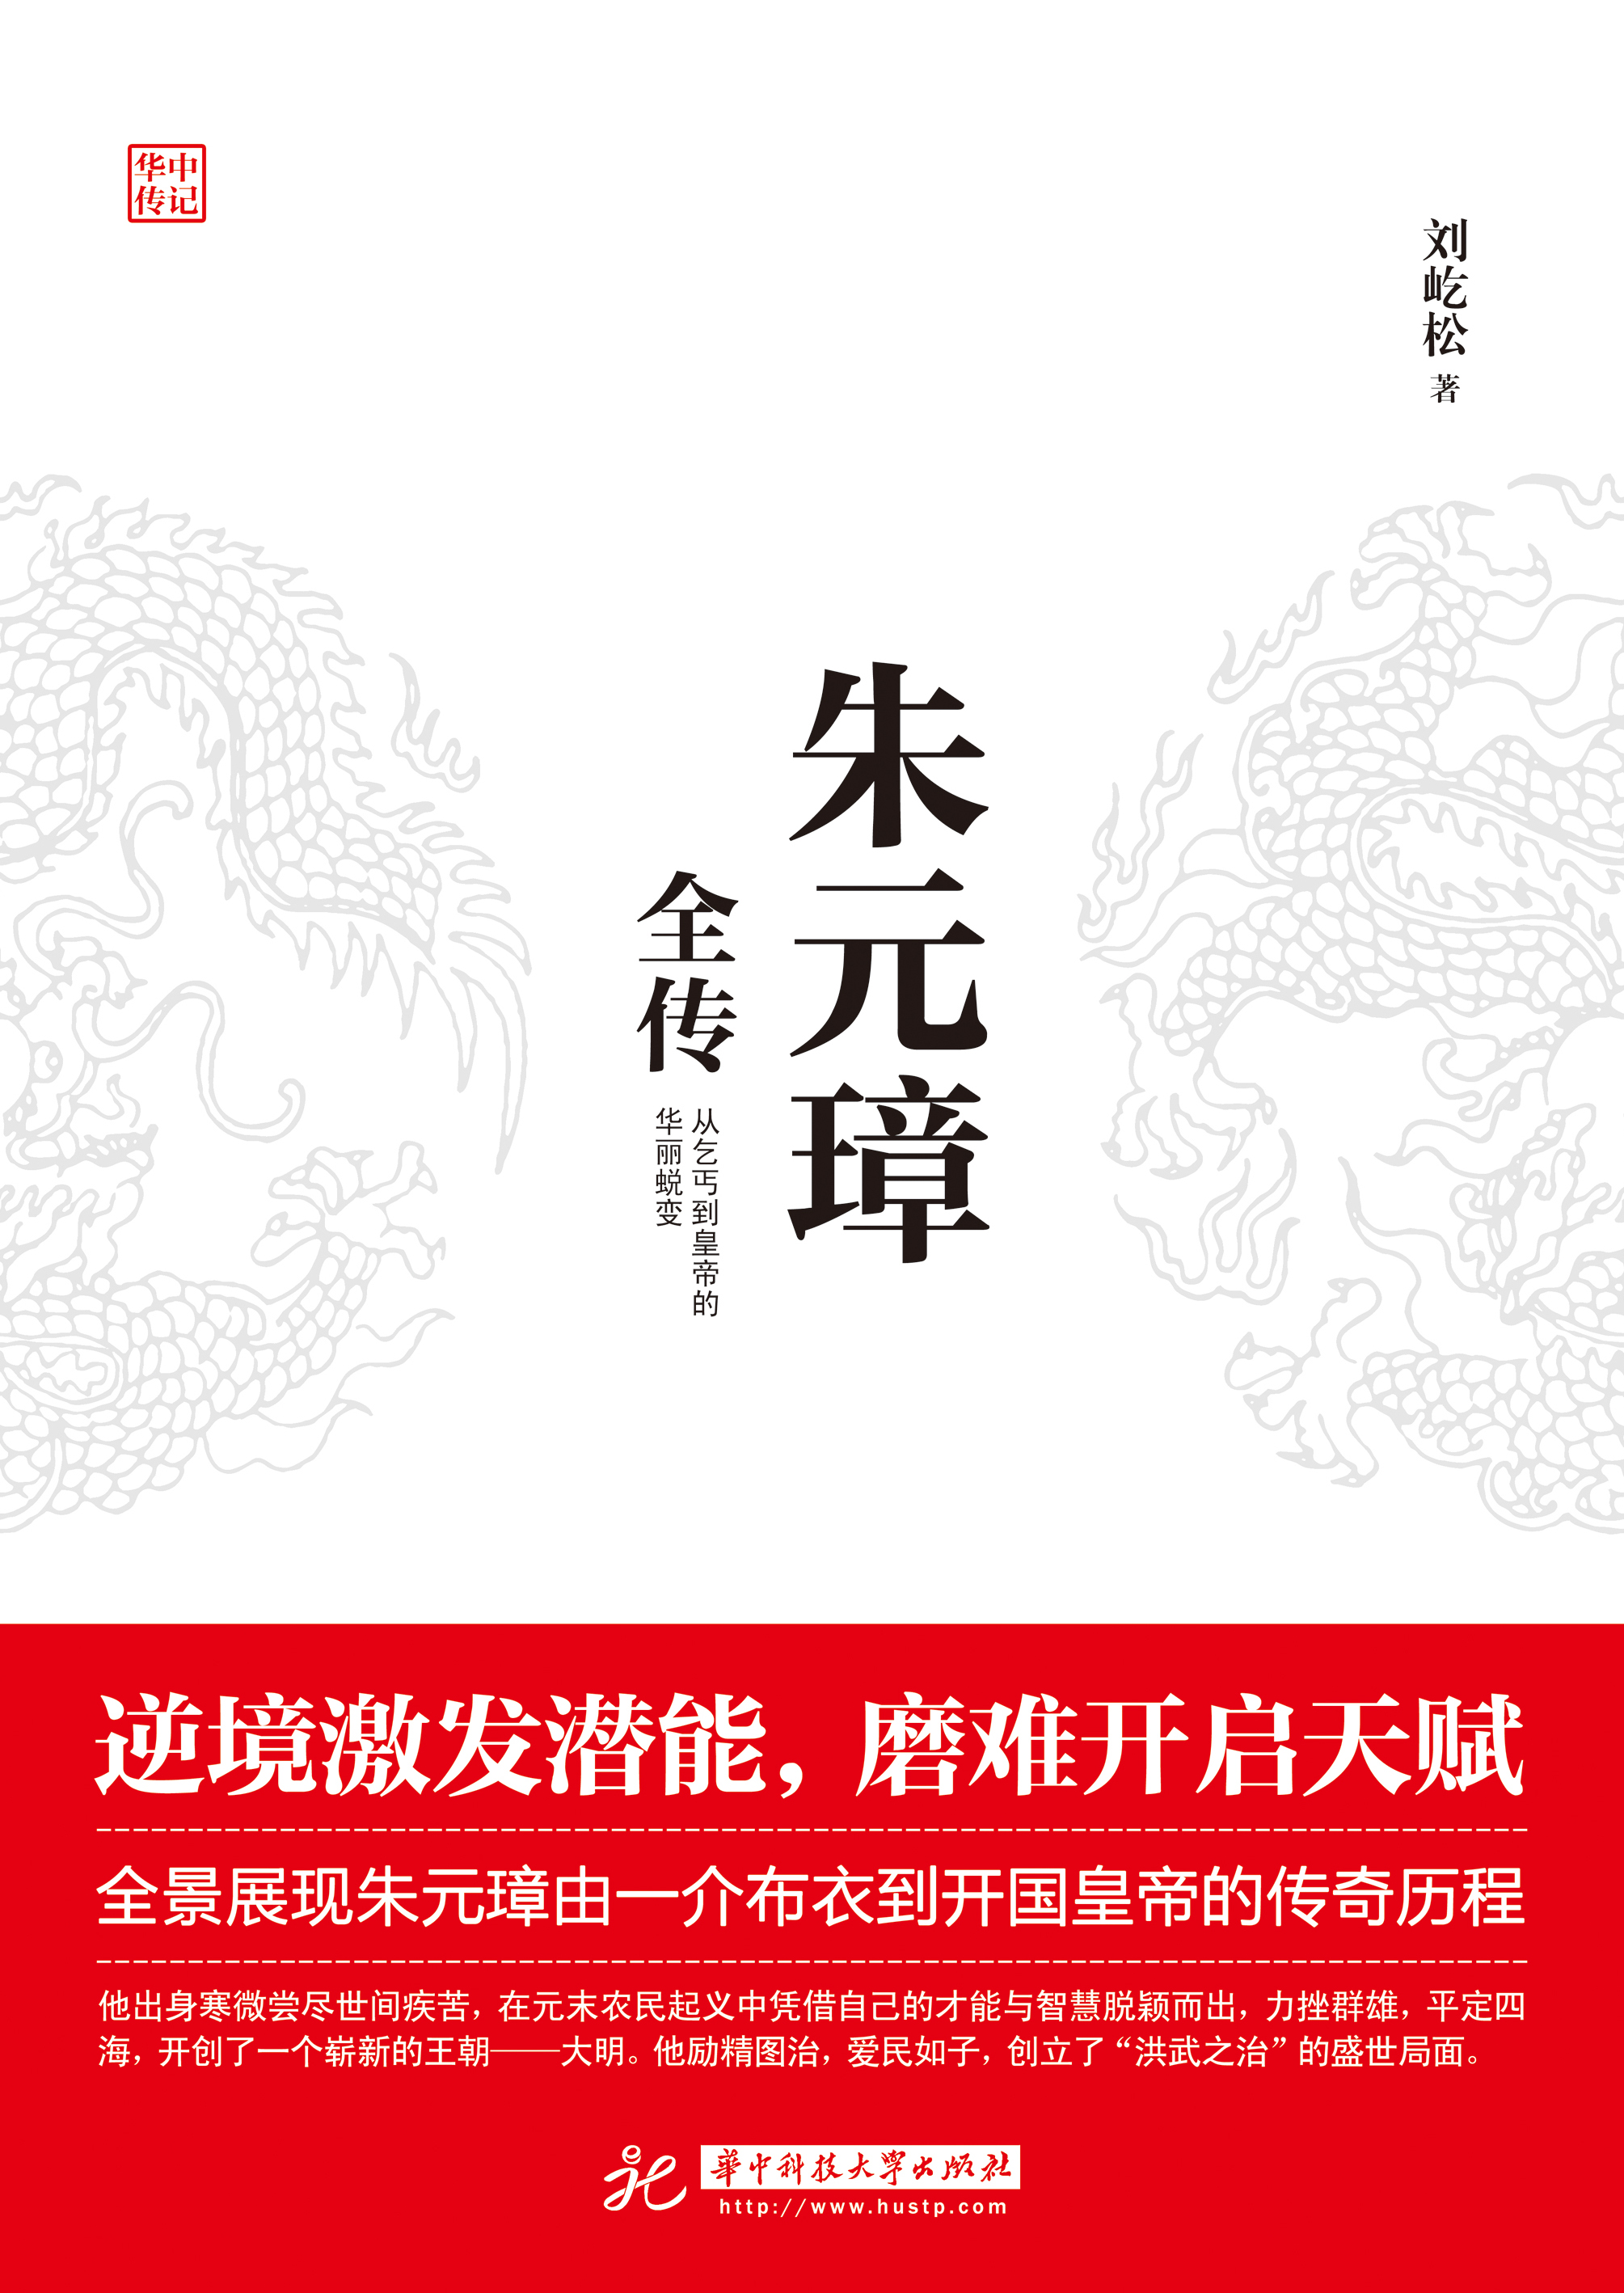 朱元璋全傳(華中科技大學出版社於2019年出版的圖書)